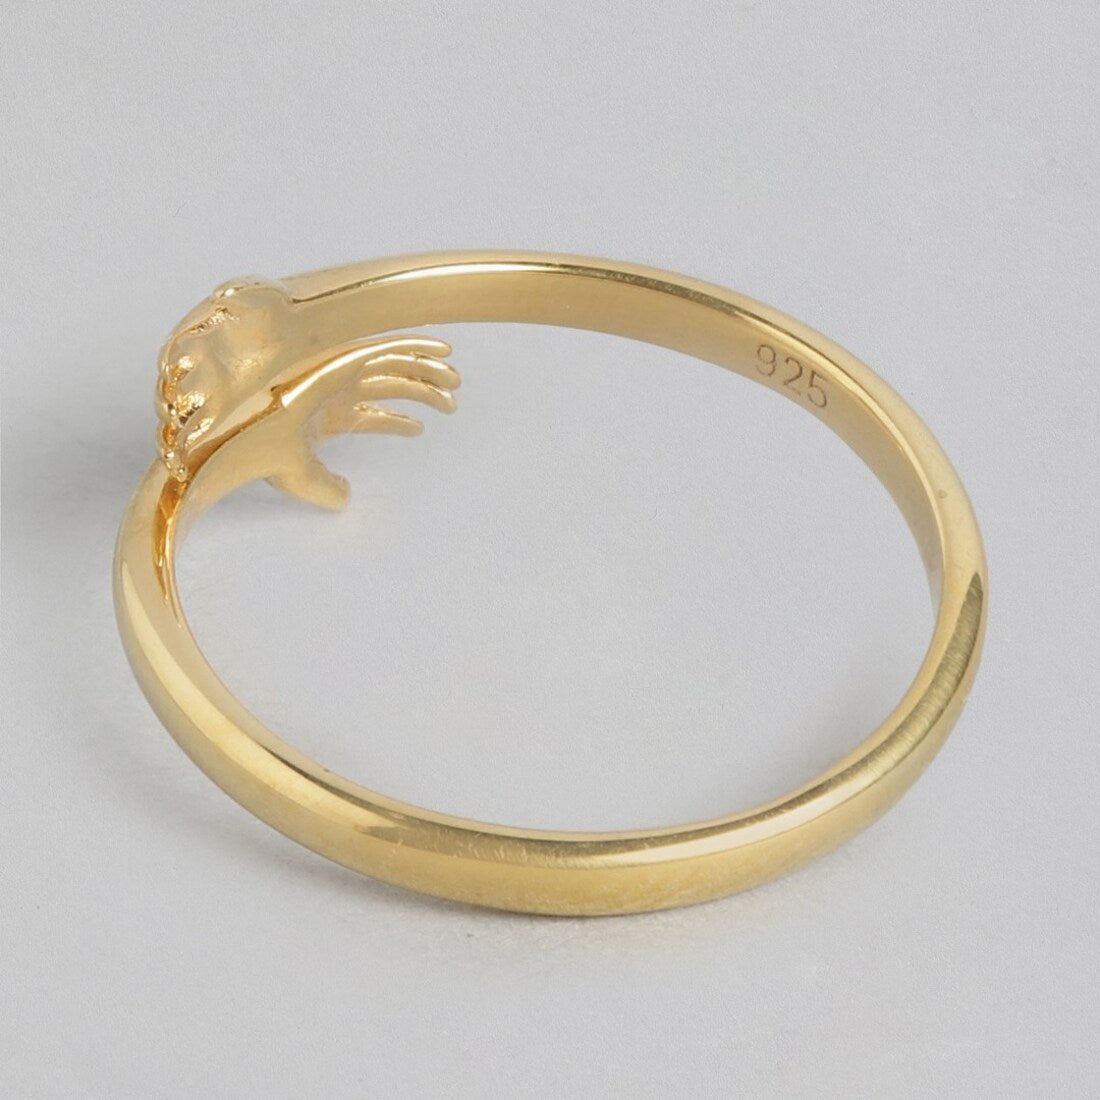 Golden Radiance 925 Sterling Silver Gold Plated Hug Ring (Adjustable)